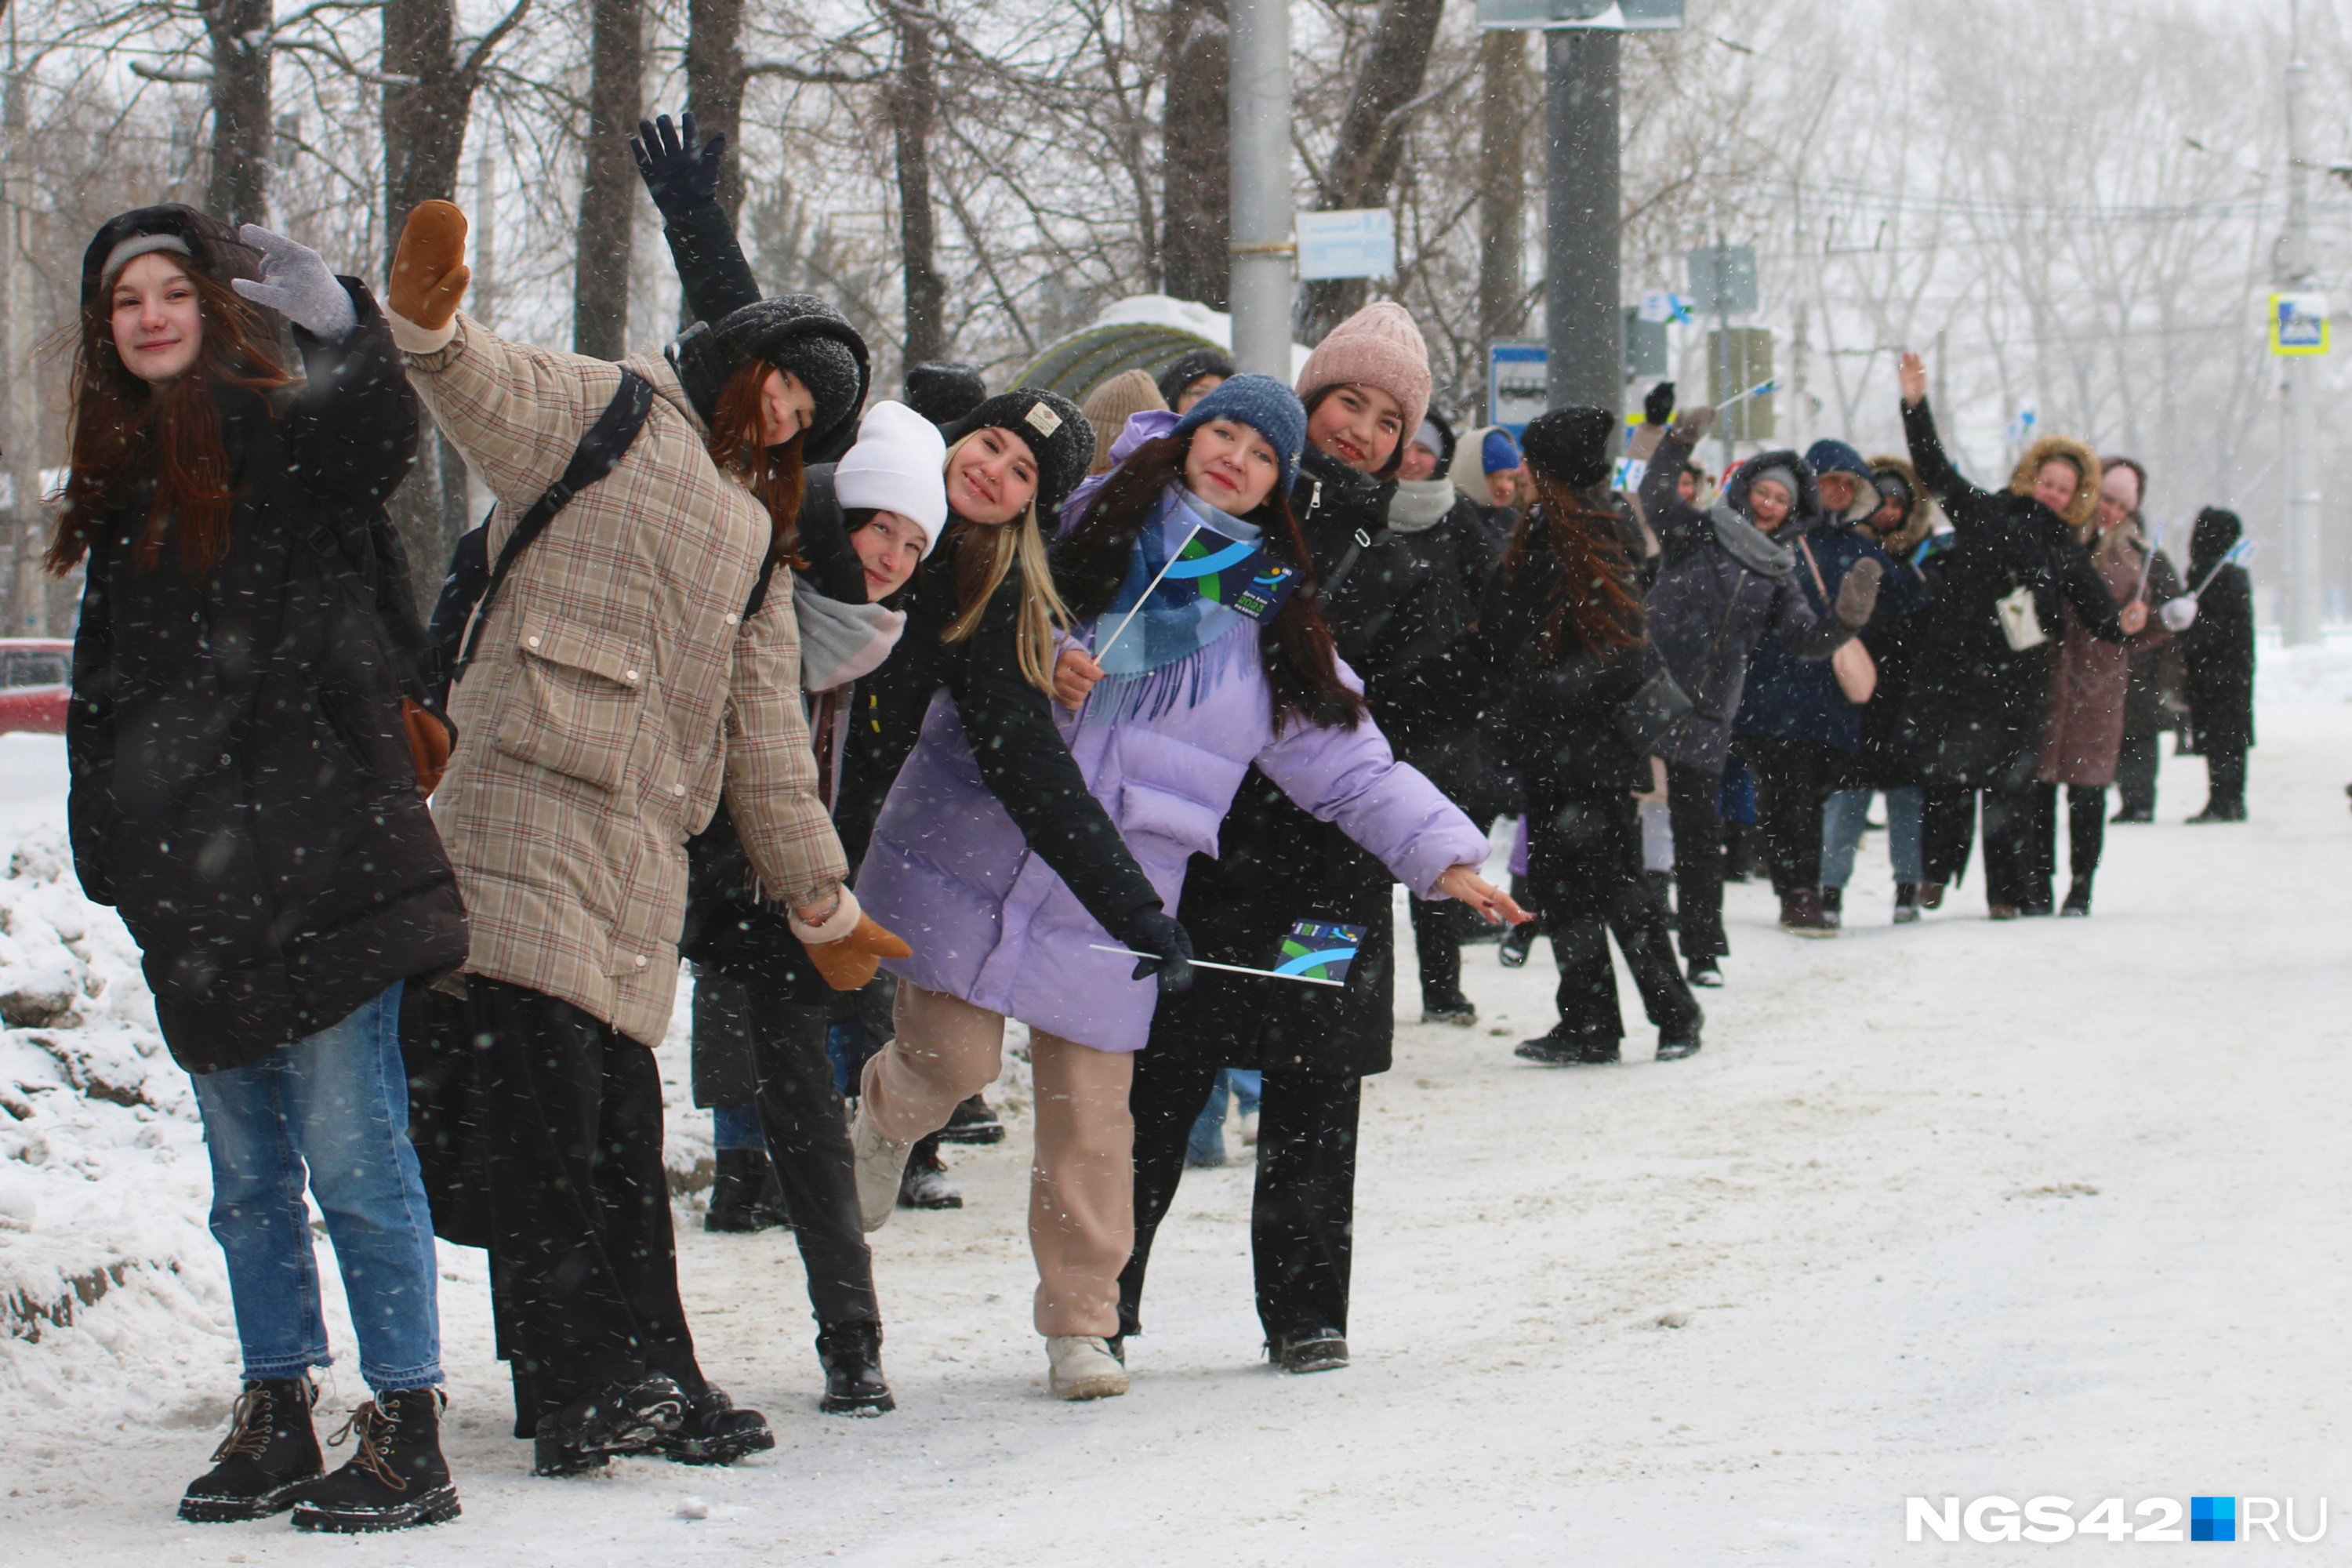 Учащиеся новокузнецких образовательных учреждений собрались на маршруте эстафеты задолго до ее начала. Пока ждали факелоносцев, развлекались как могли